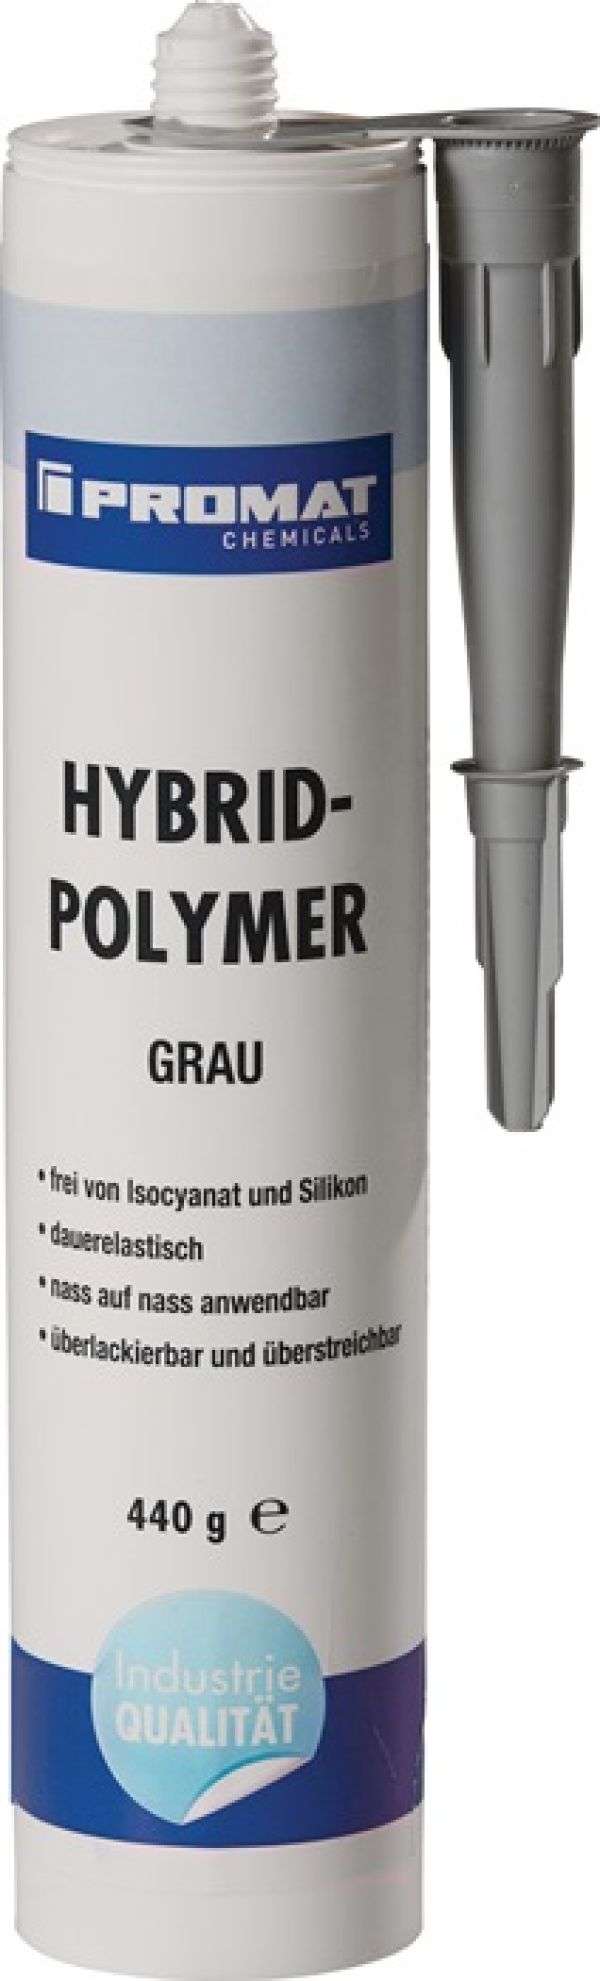 1K-Hybrid-Polymer  PROMAT CHEMICALS (VPE: 1 Stück)